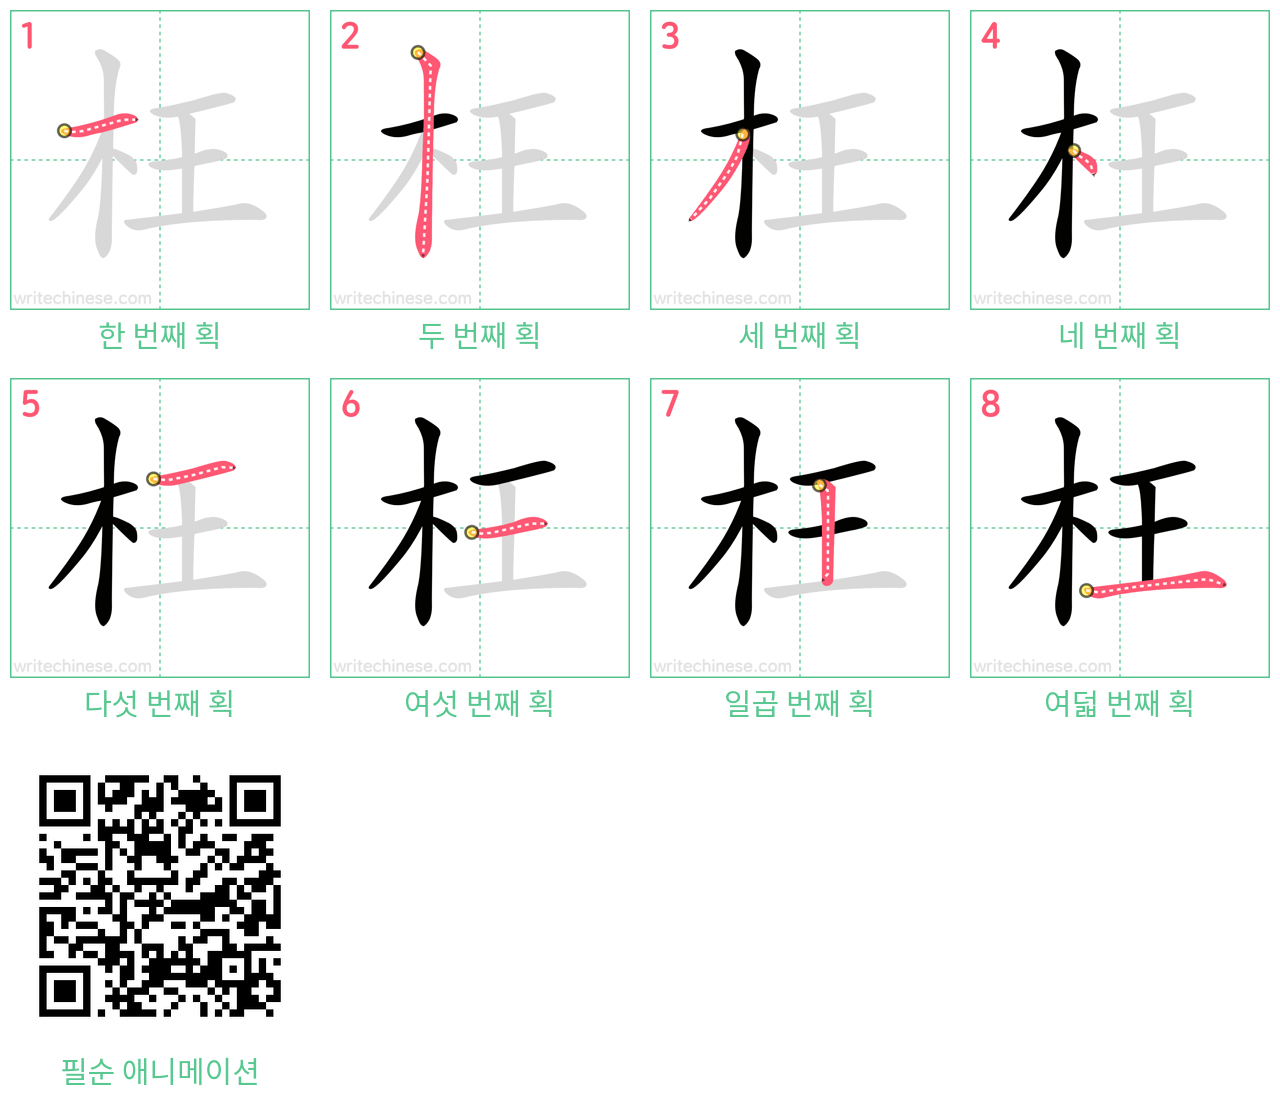 枉 step-by-step stroke order diagrams